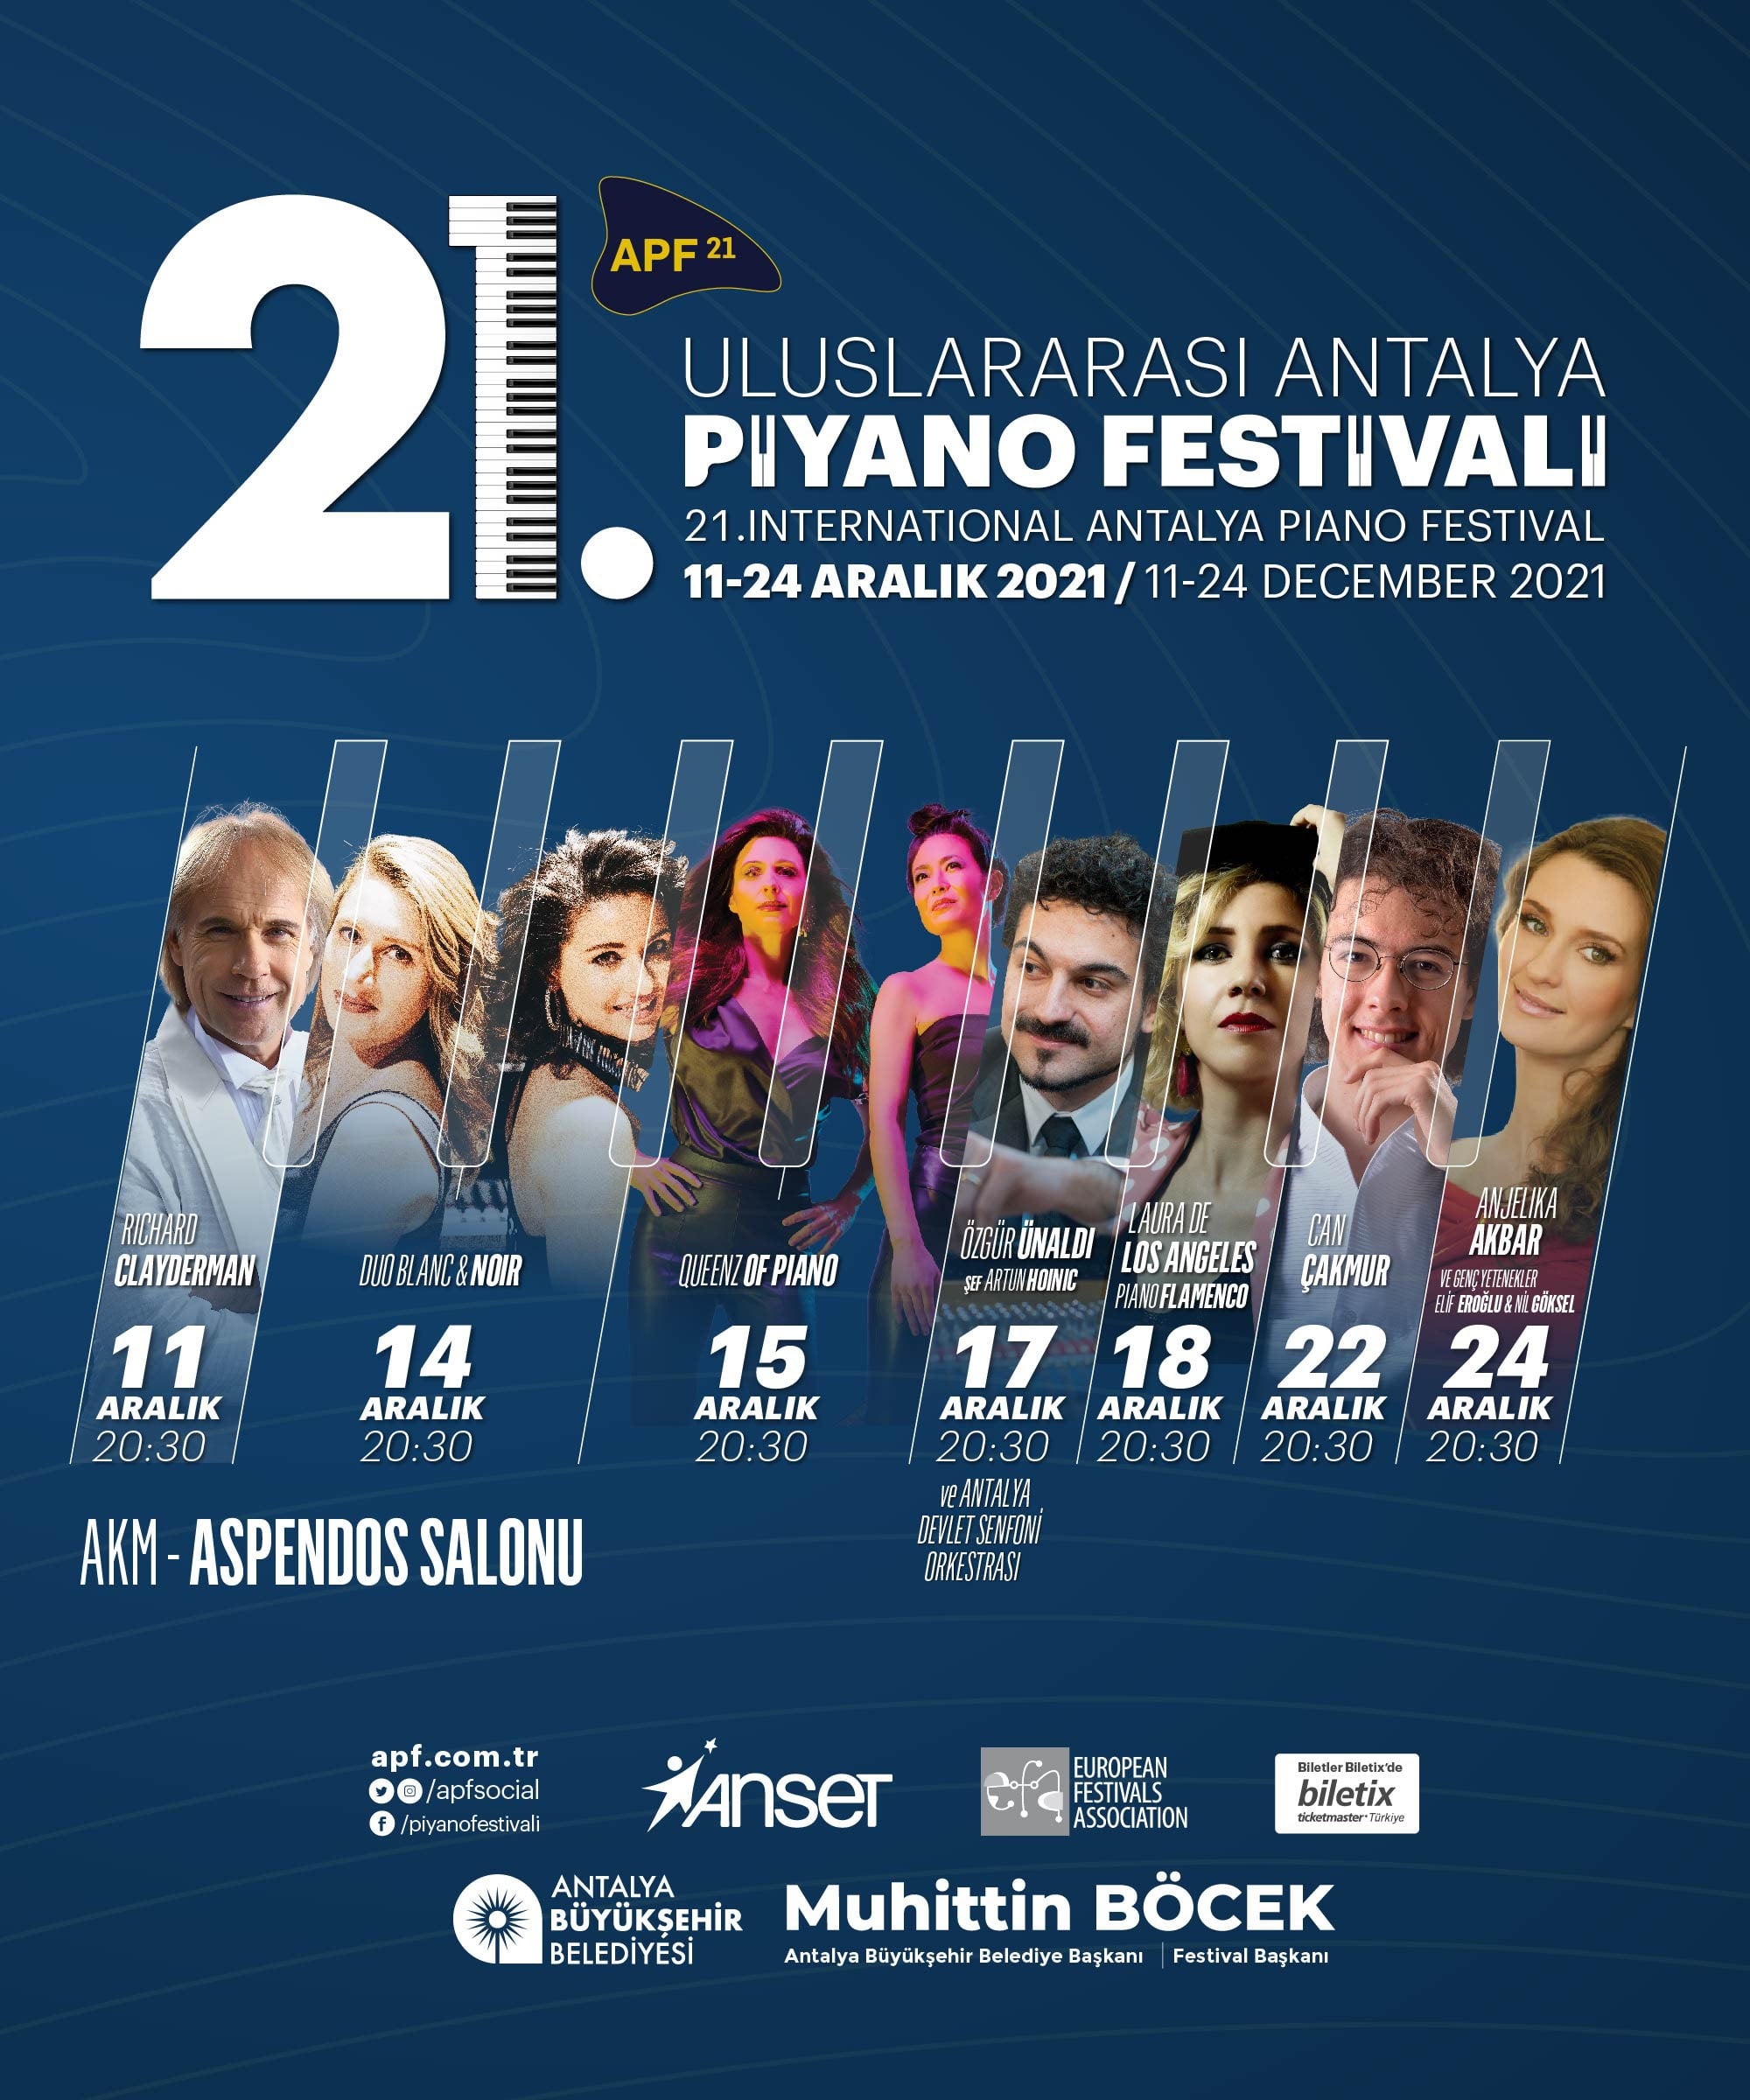 Uluslararası Antalya piyano festivali başlıyor